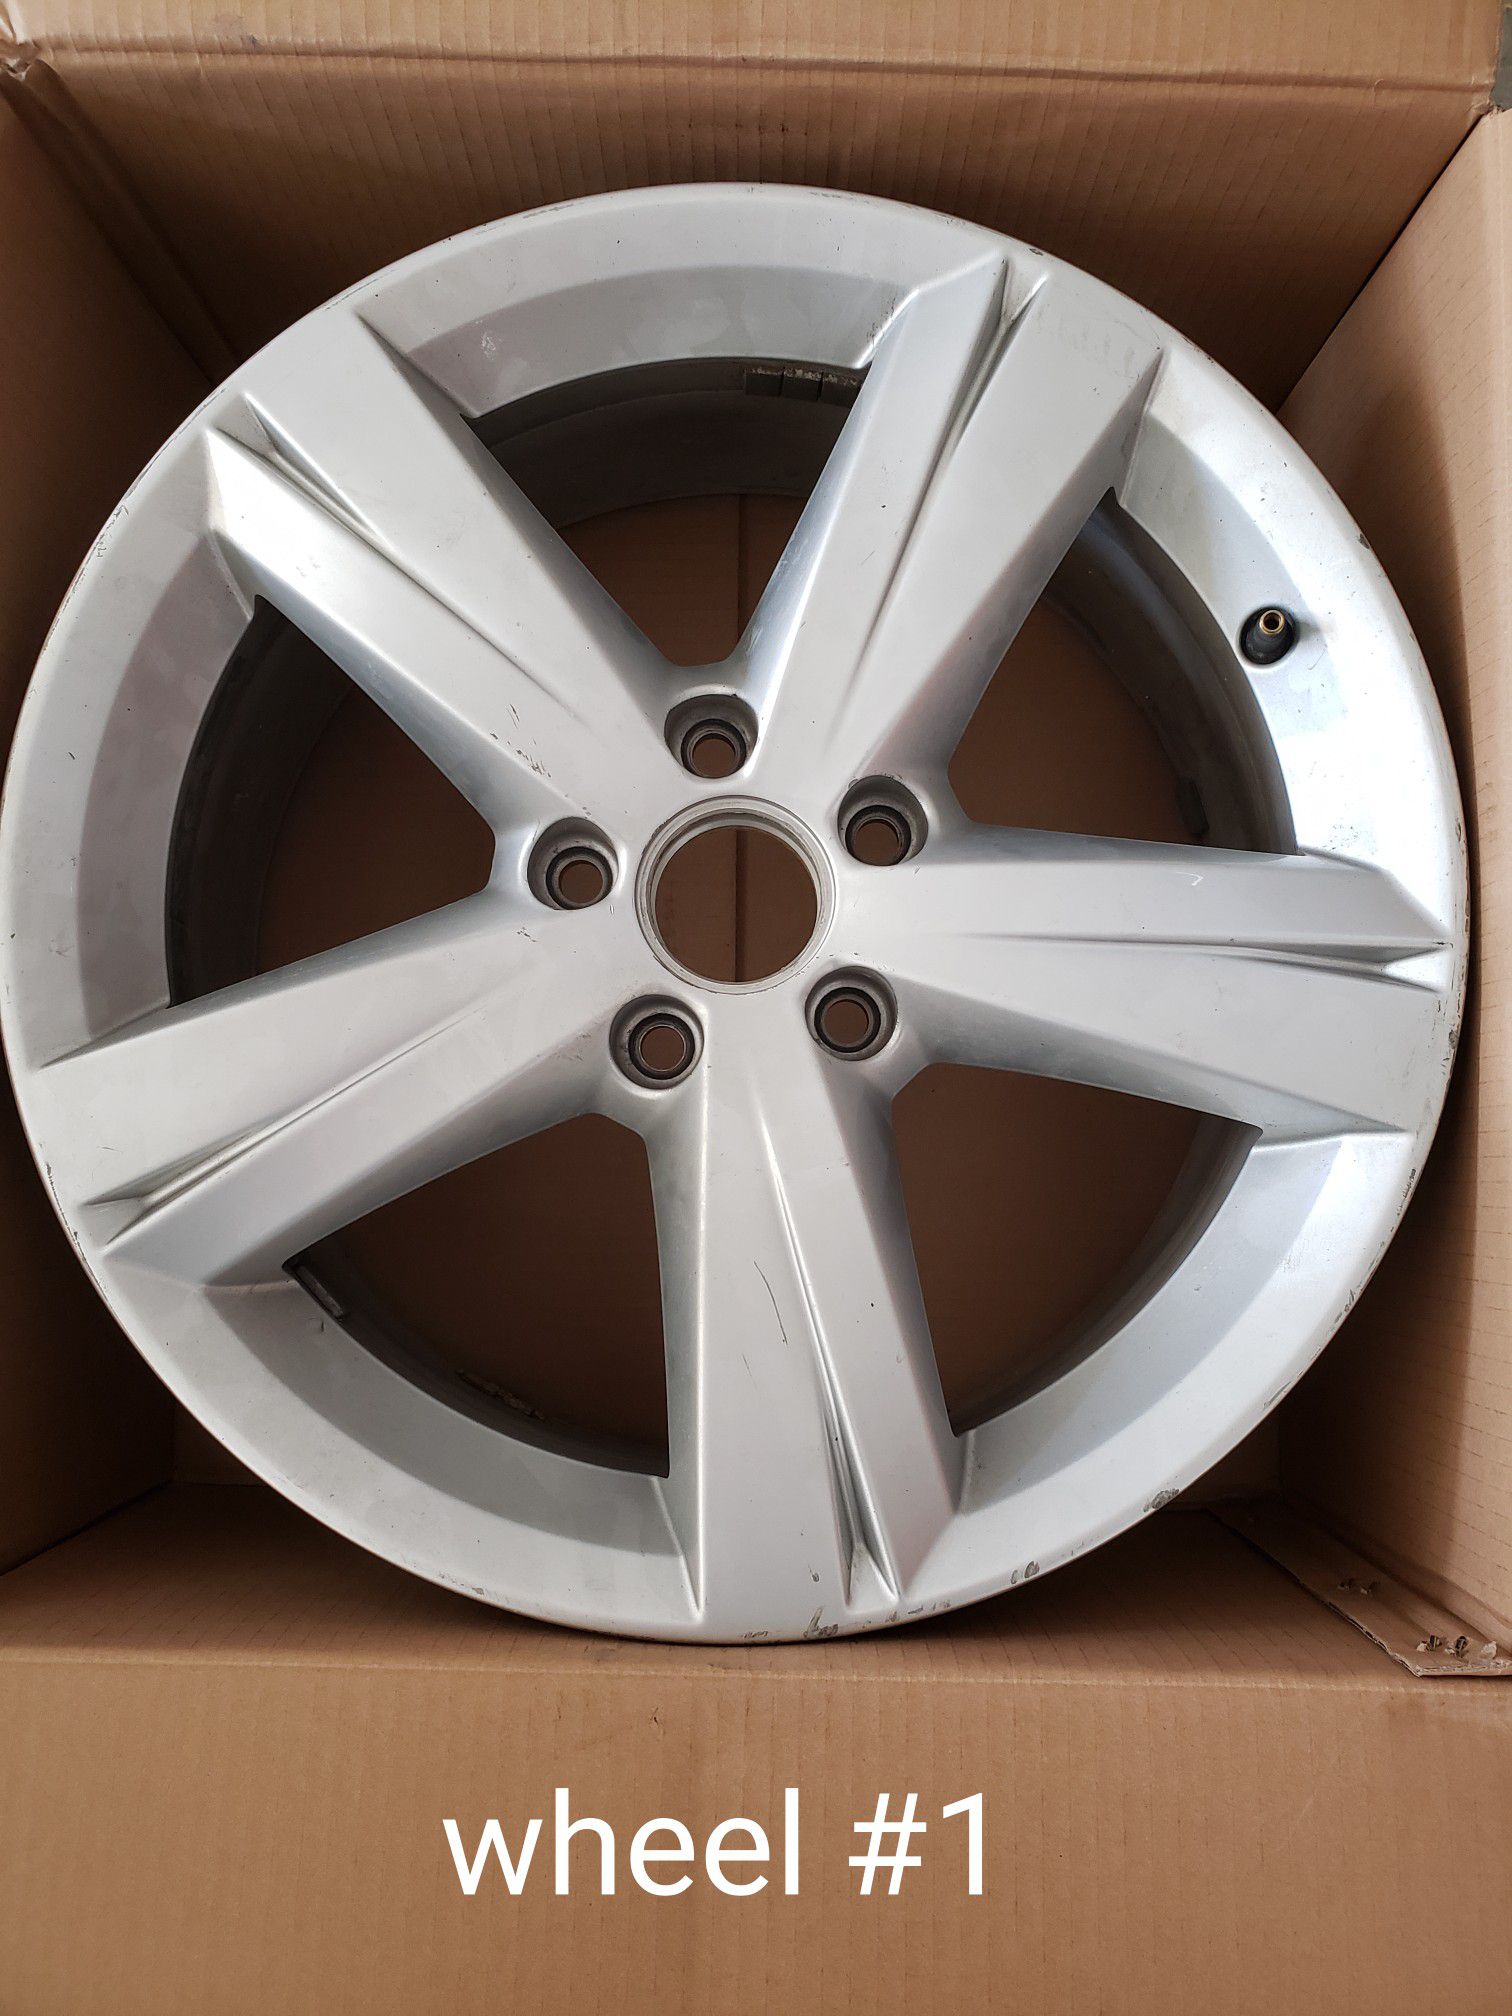 Two 17" 2014 Volkswagen Passat OEM wheels